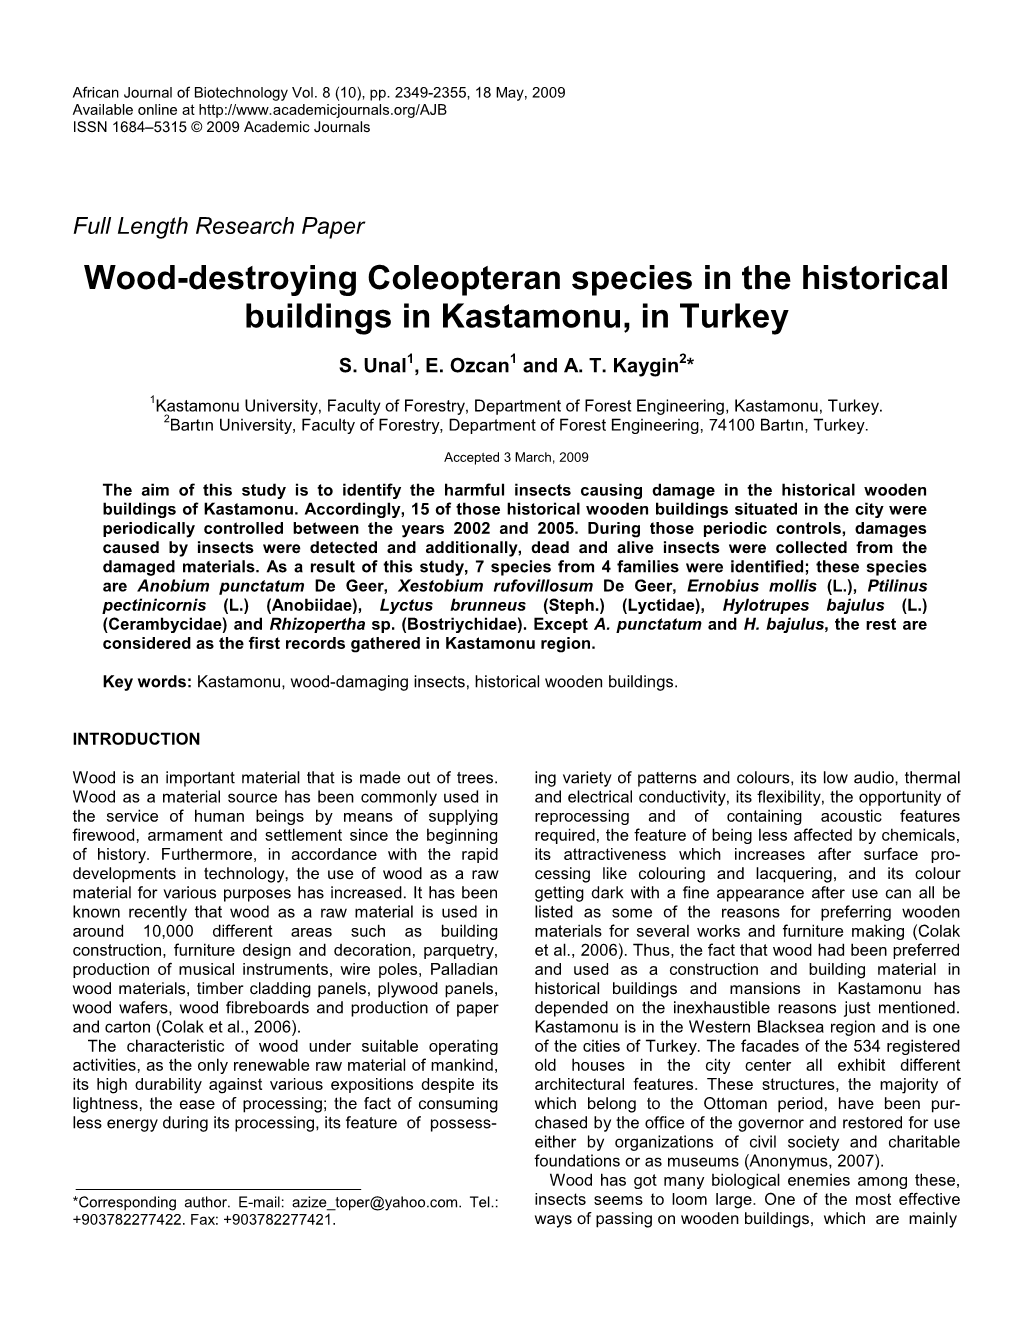 Wood-Destroying Coleopteran Species in the Historical Buildings in Kastamonu, in Turkey